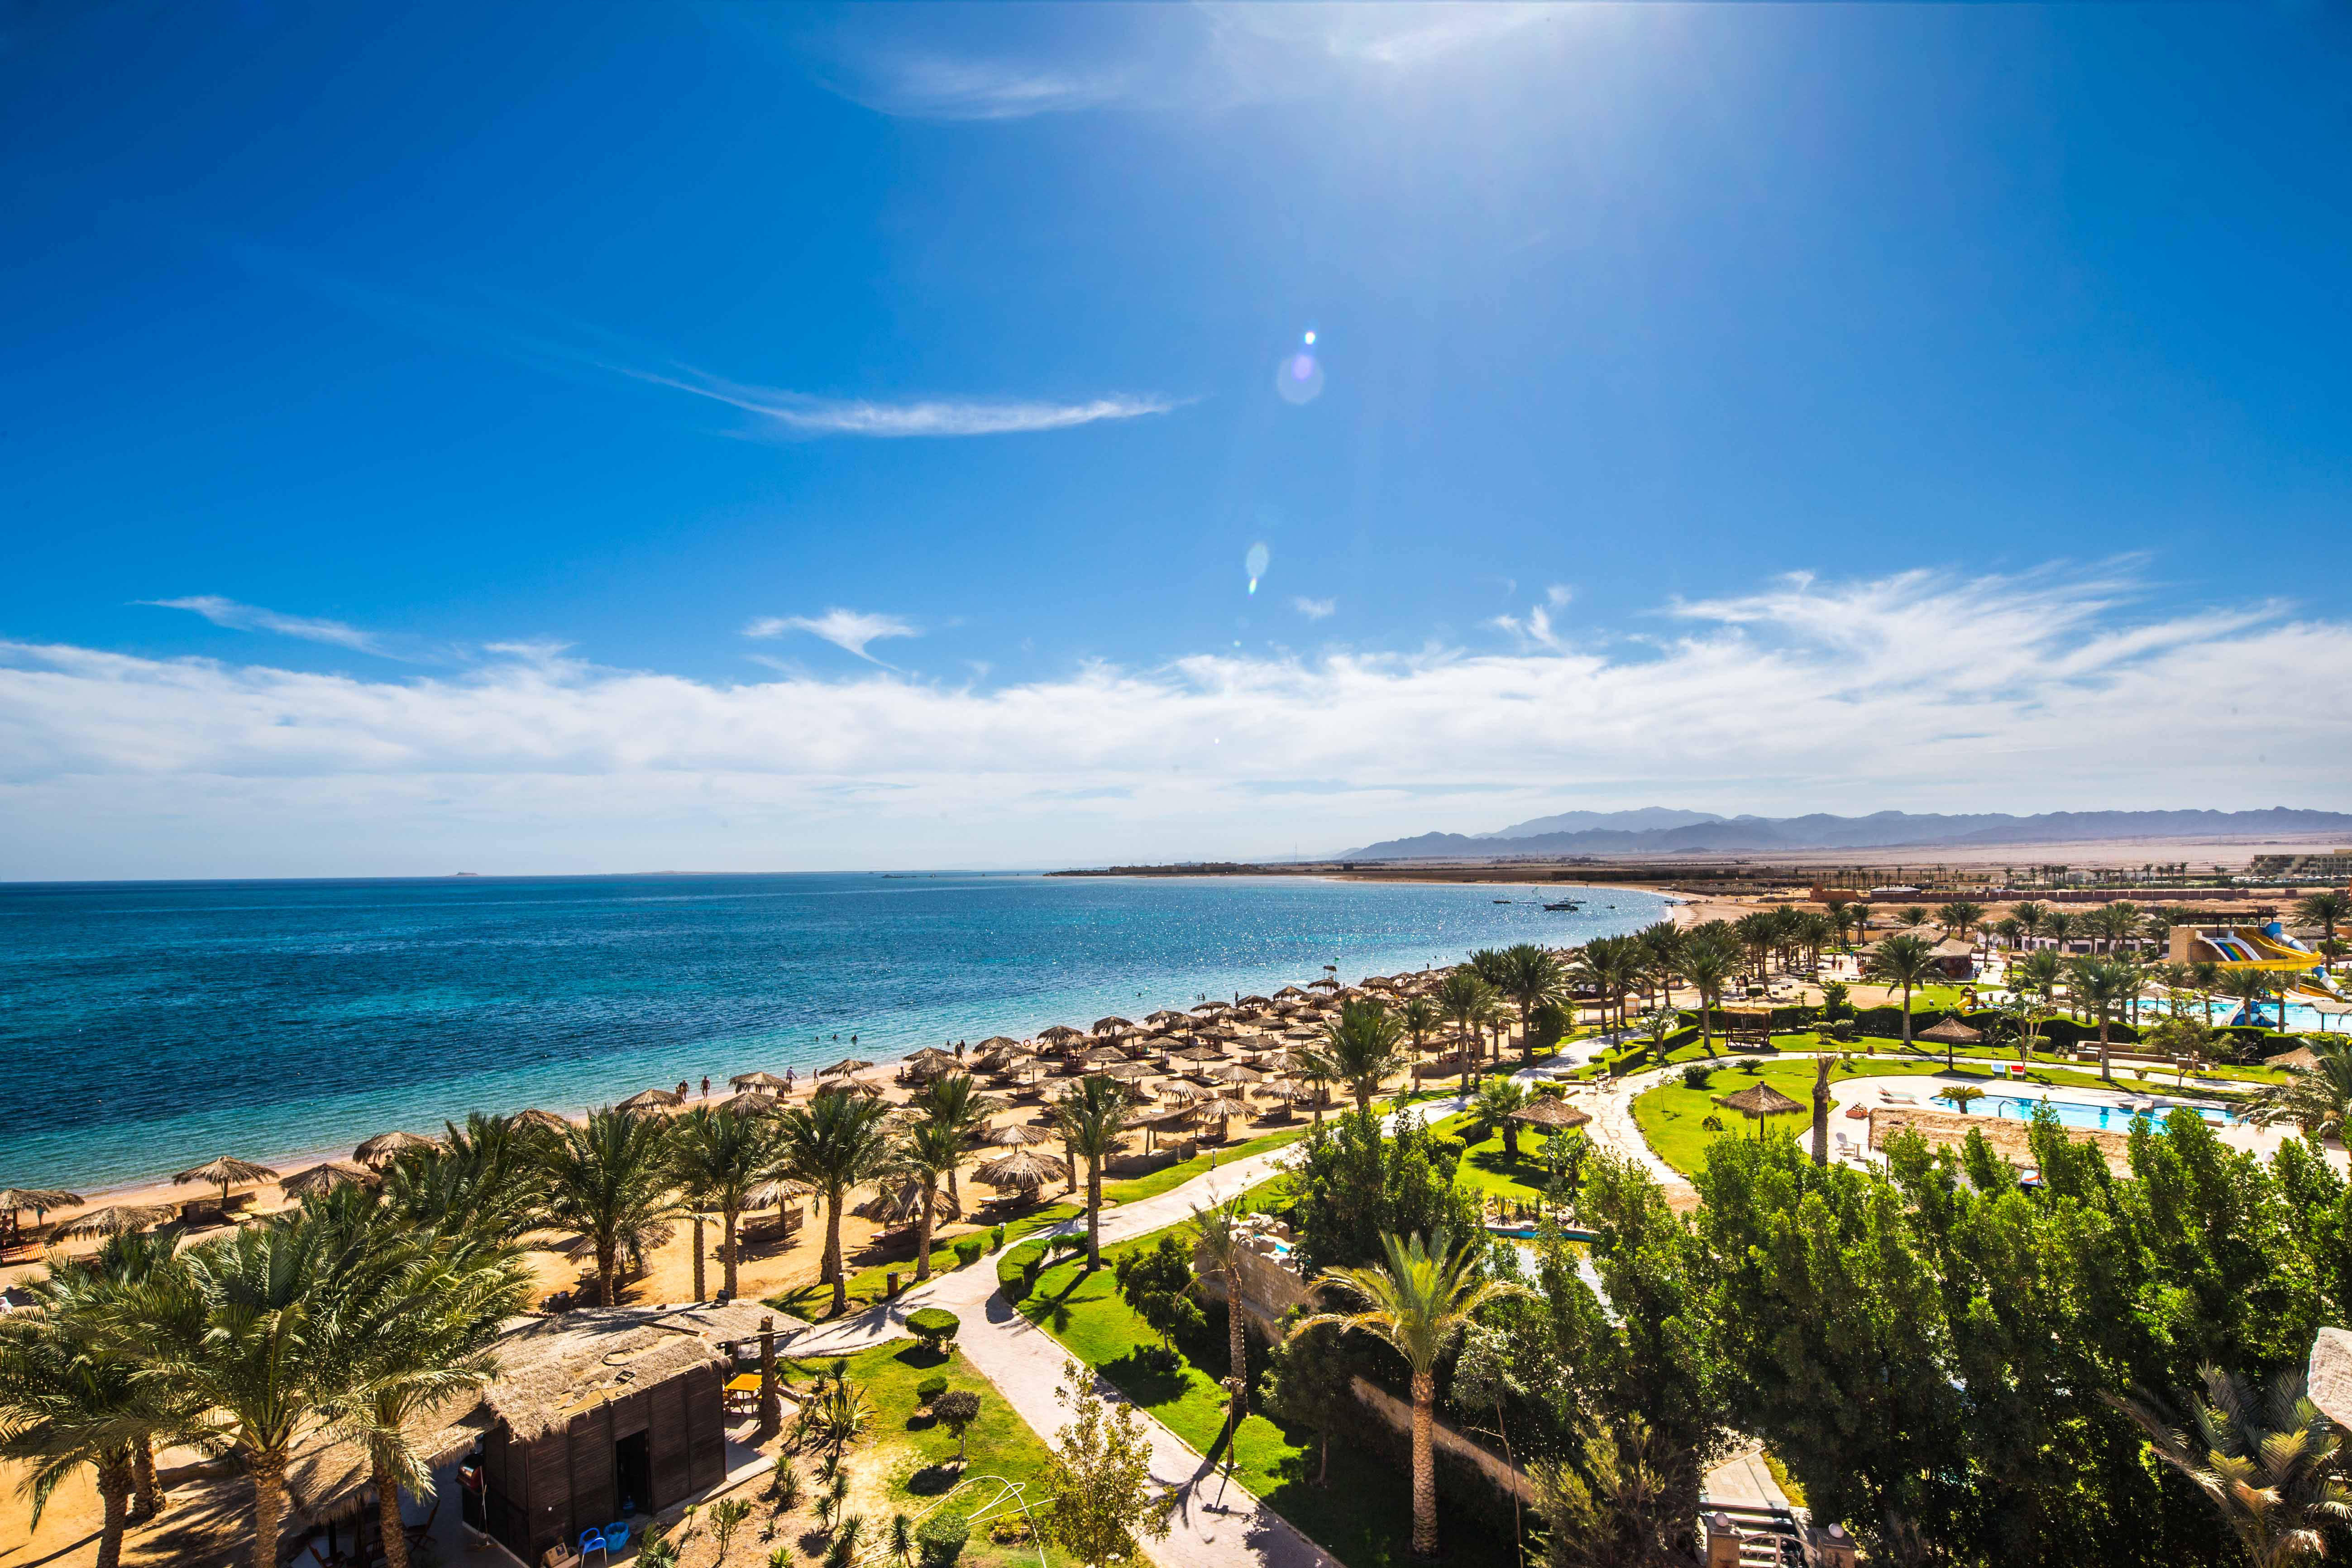 Caribbean World Resorts Soma Bay in Soma Bay • HolidayCheck | Hurghada ...